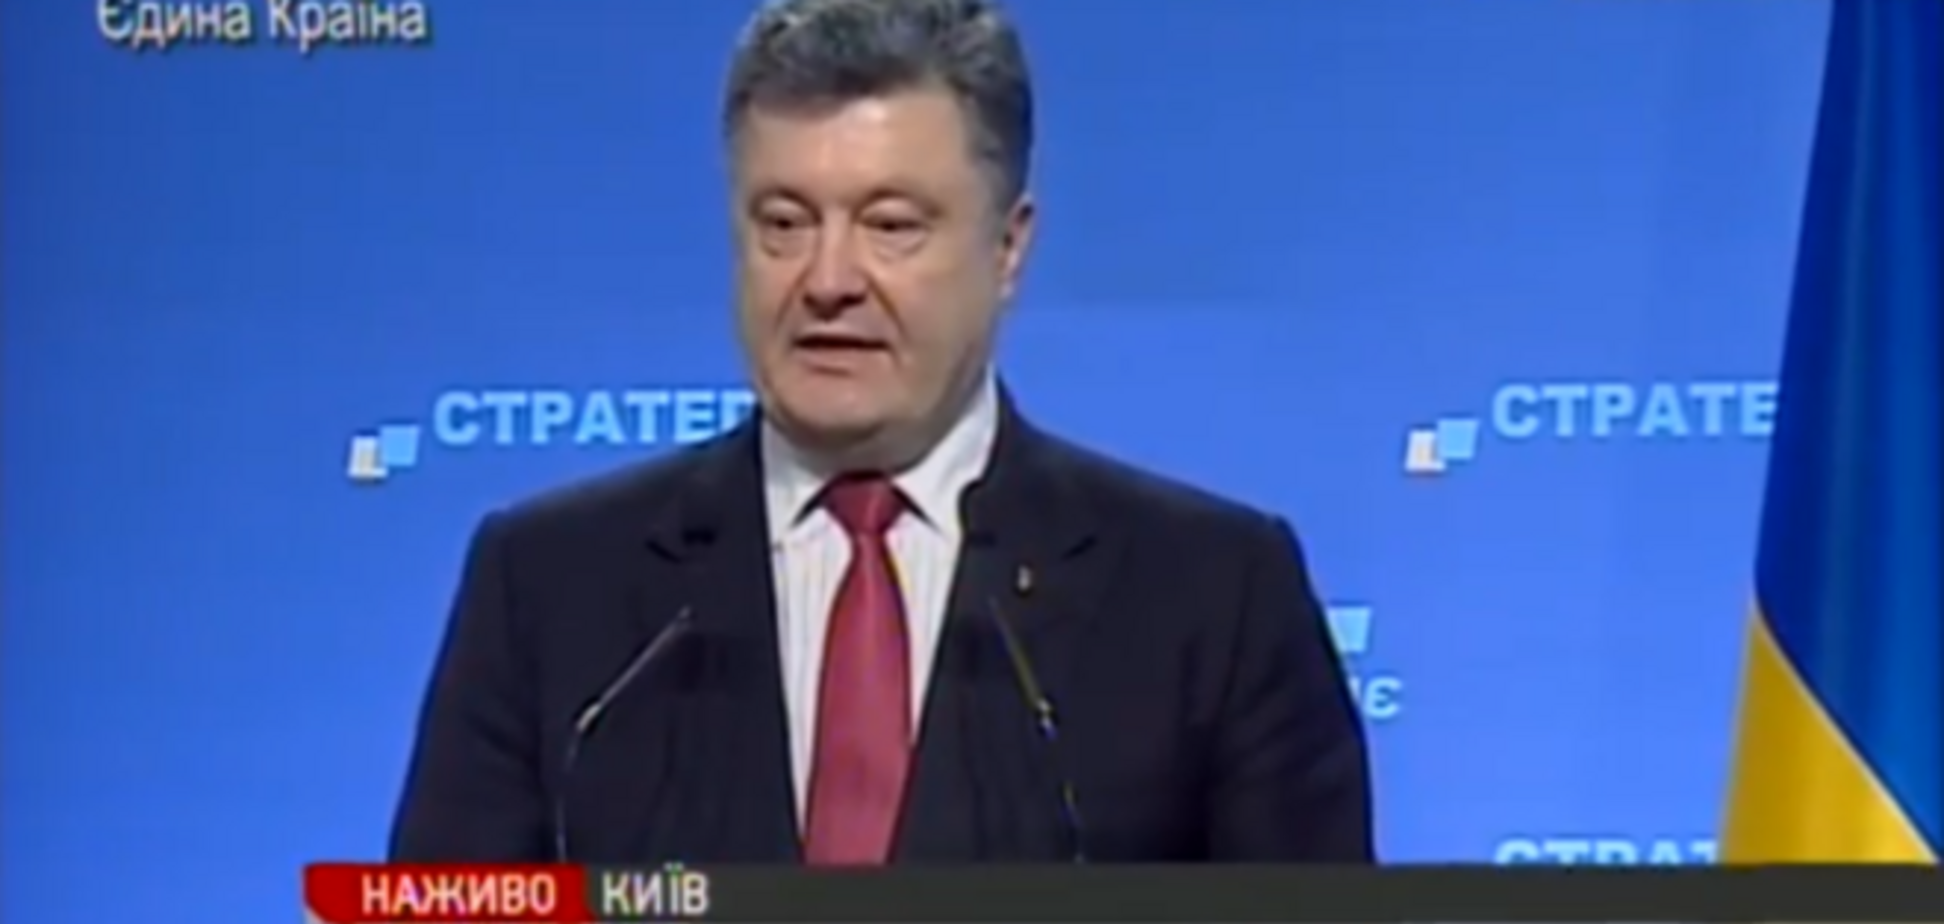 Выборы на Донбассе пройдут по украинскому законодательству или не пройдут совсем - Порошенко